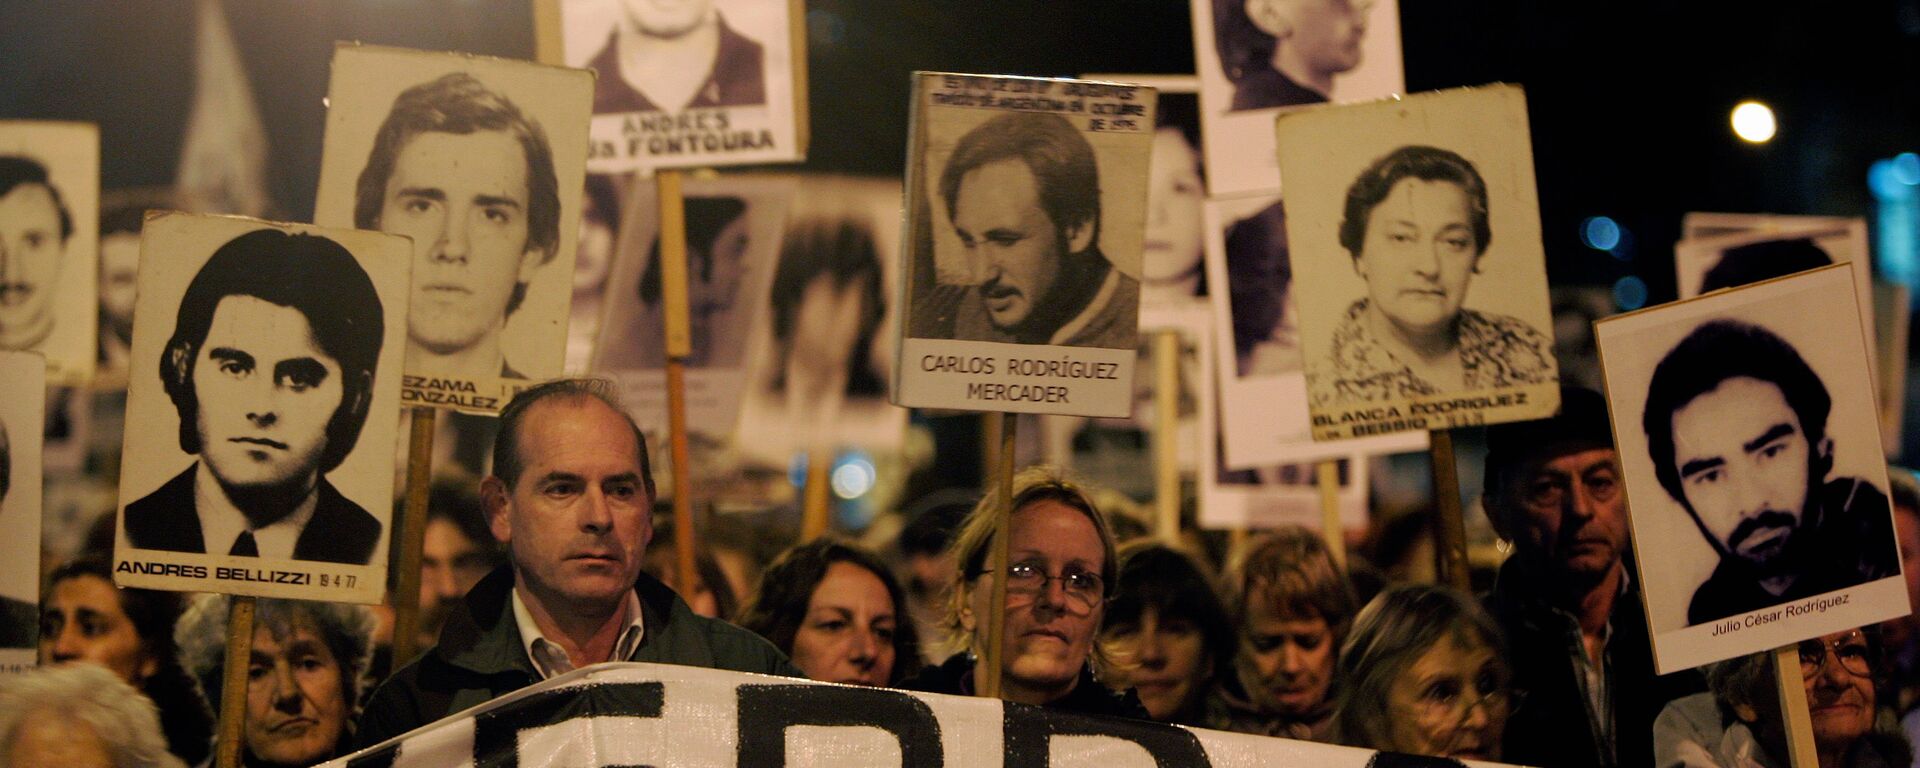 Marcha de Silencio en conmemoración de las víctimas de la dictadura de 1973-1985, 20 de mayo de 2088, Montevideo, Uruguay - Sputnik Mundo, 1920, 18.06.2019